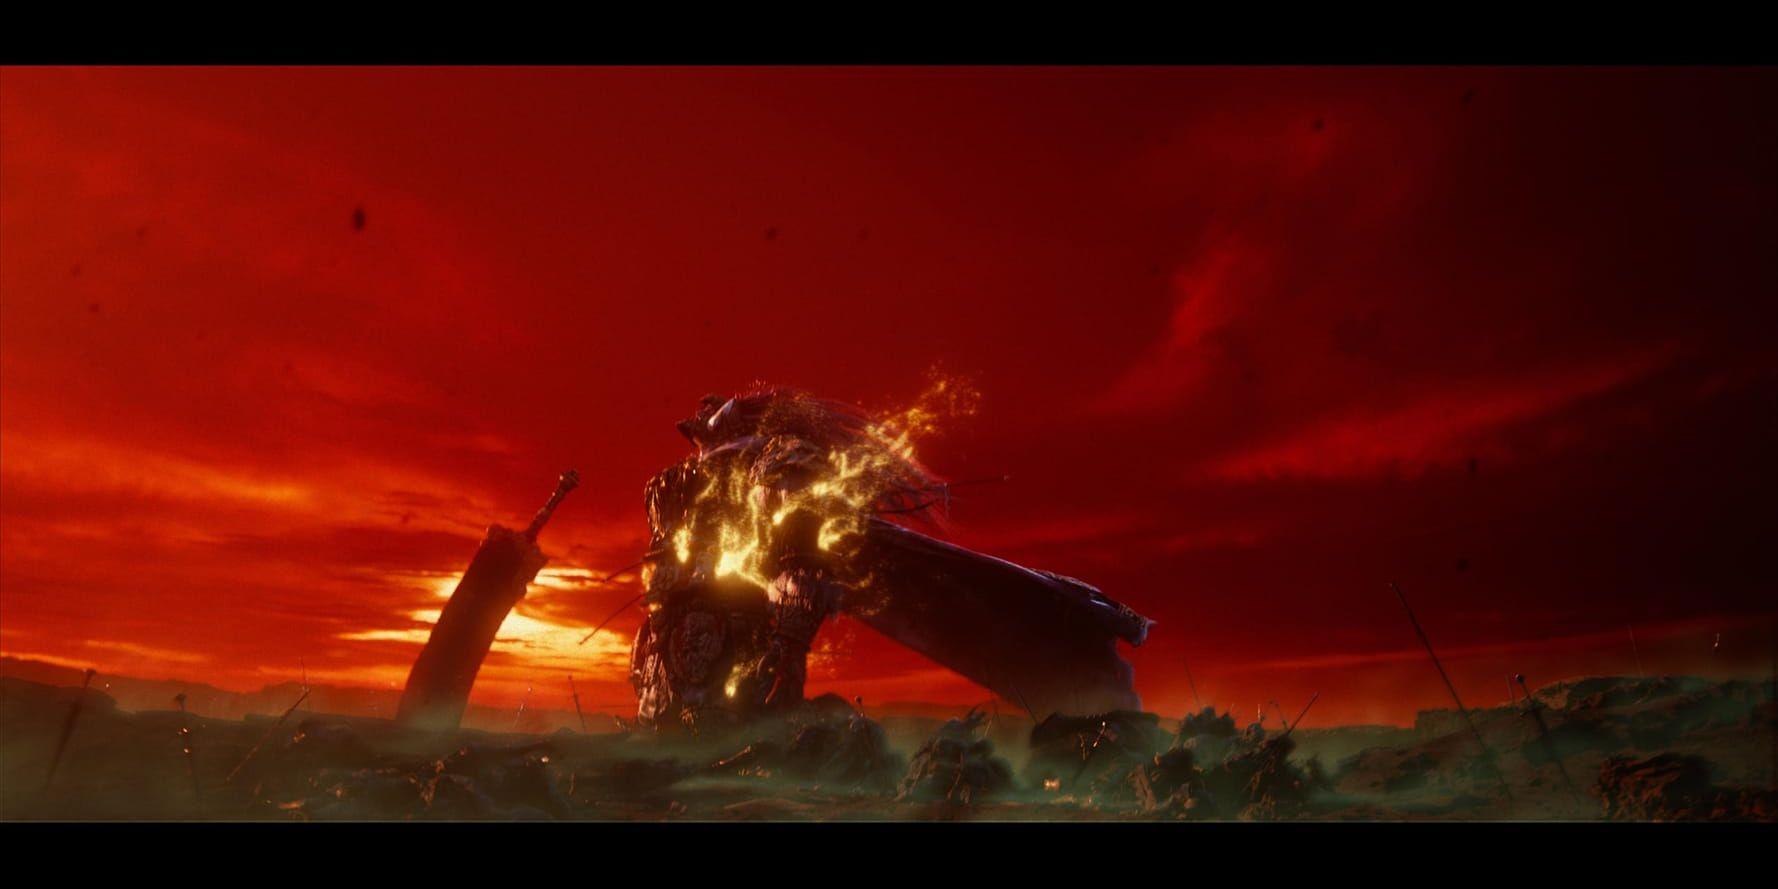 Bild ur From Softwares kommande titel "Elden ring", där fantasyförfattaren George RR Martin haft ett finger med i spelet.